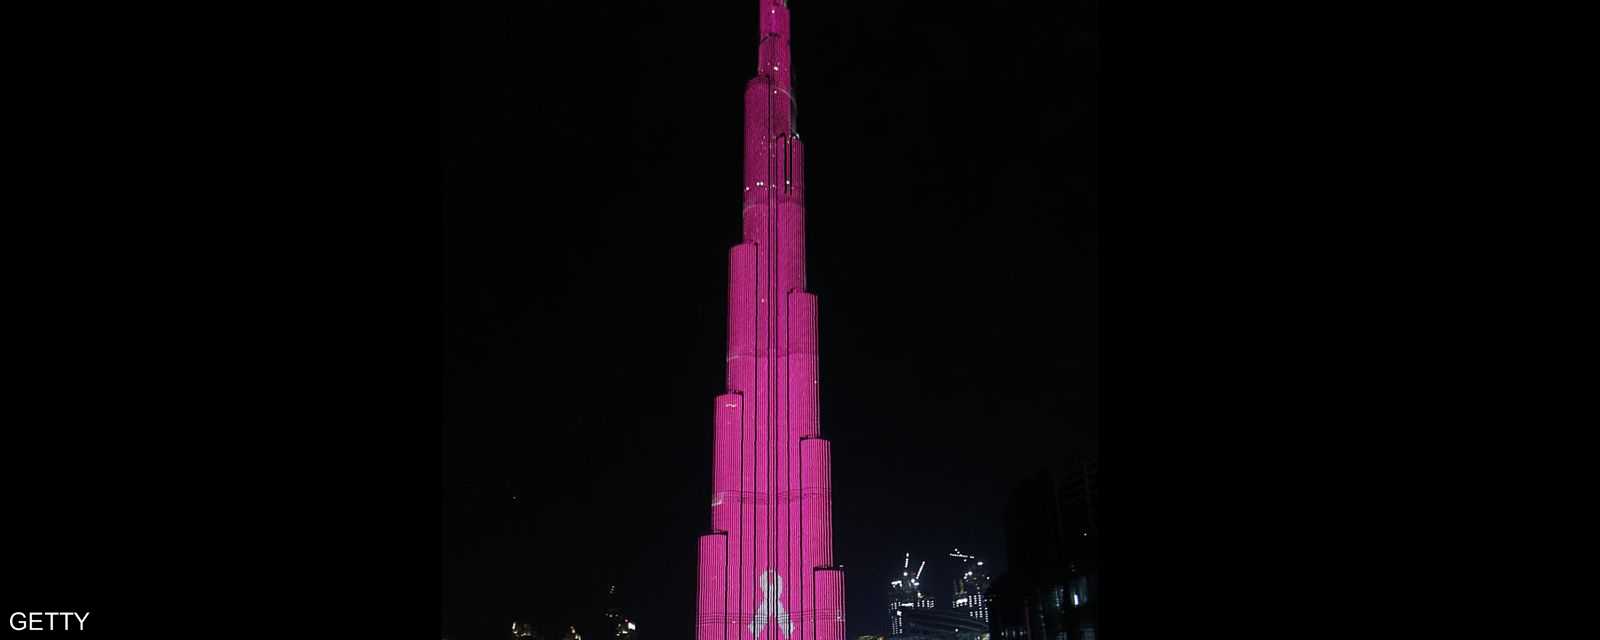 برج خليفة في دبي يتضامن مع المصابين بسرطان الثدي